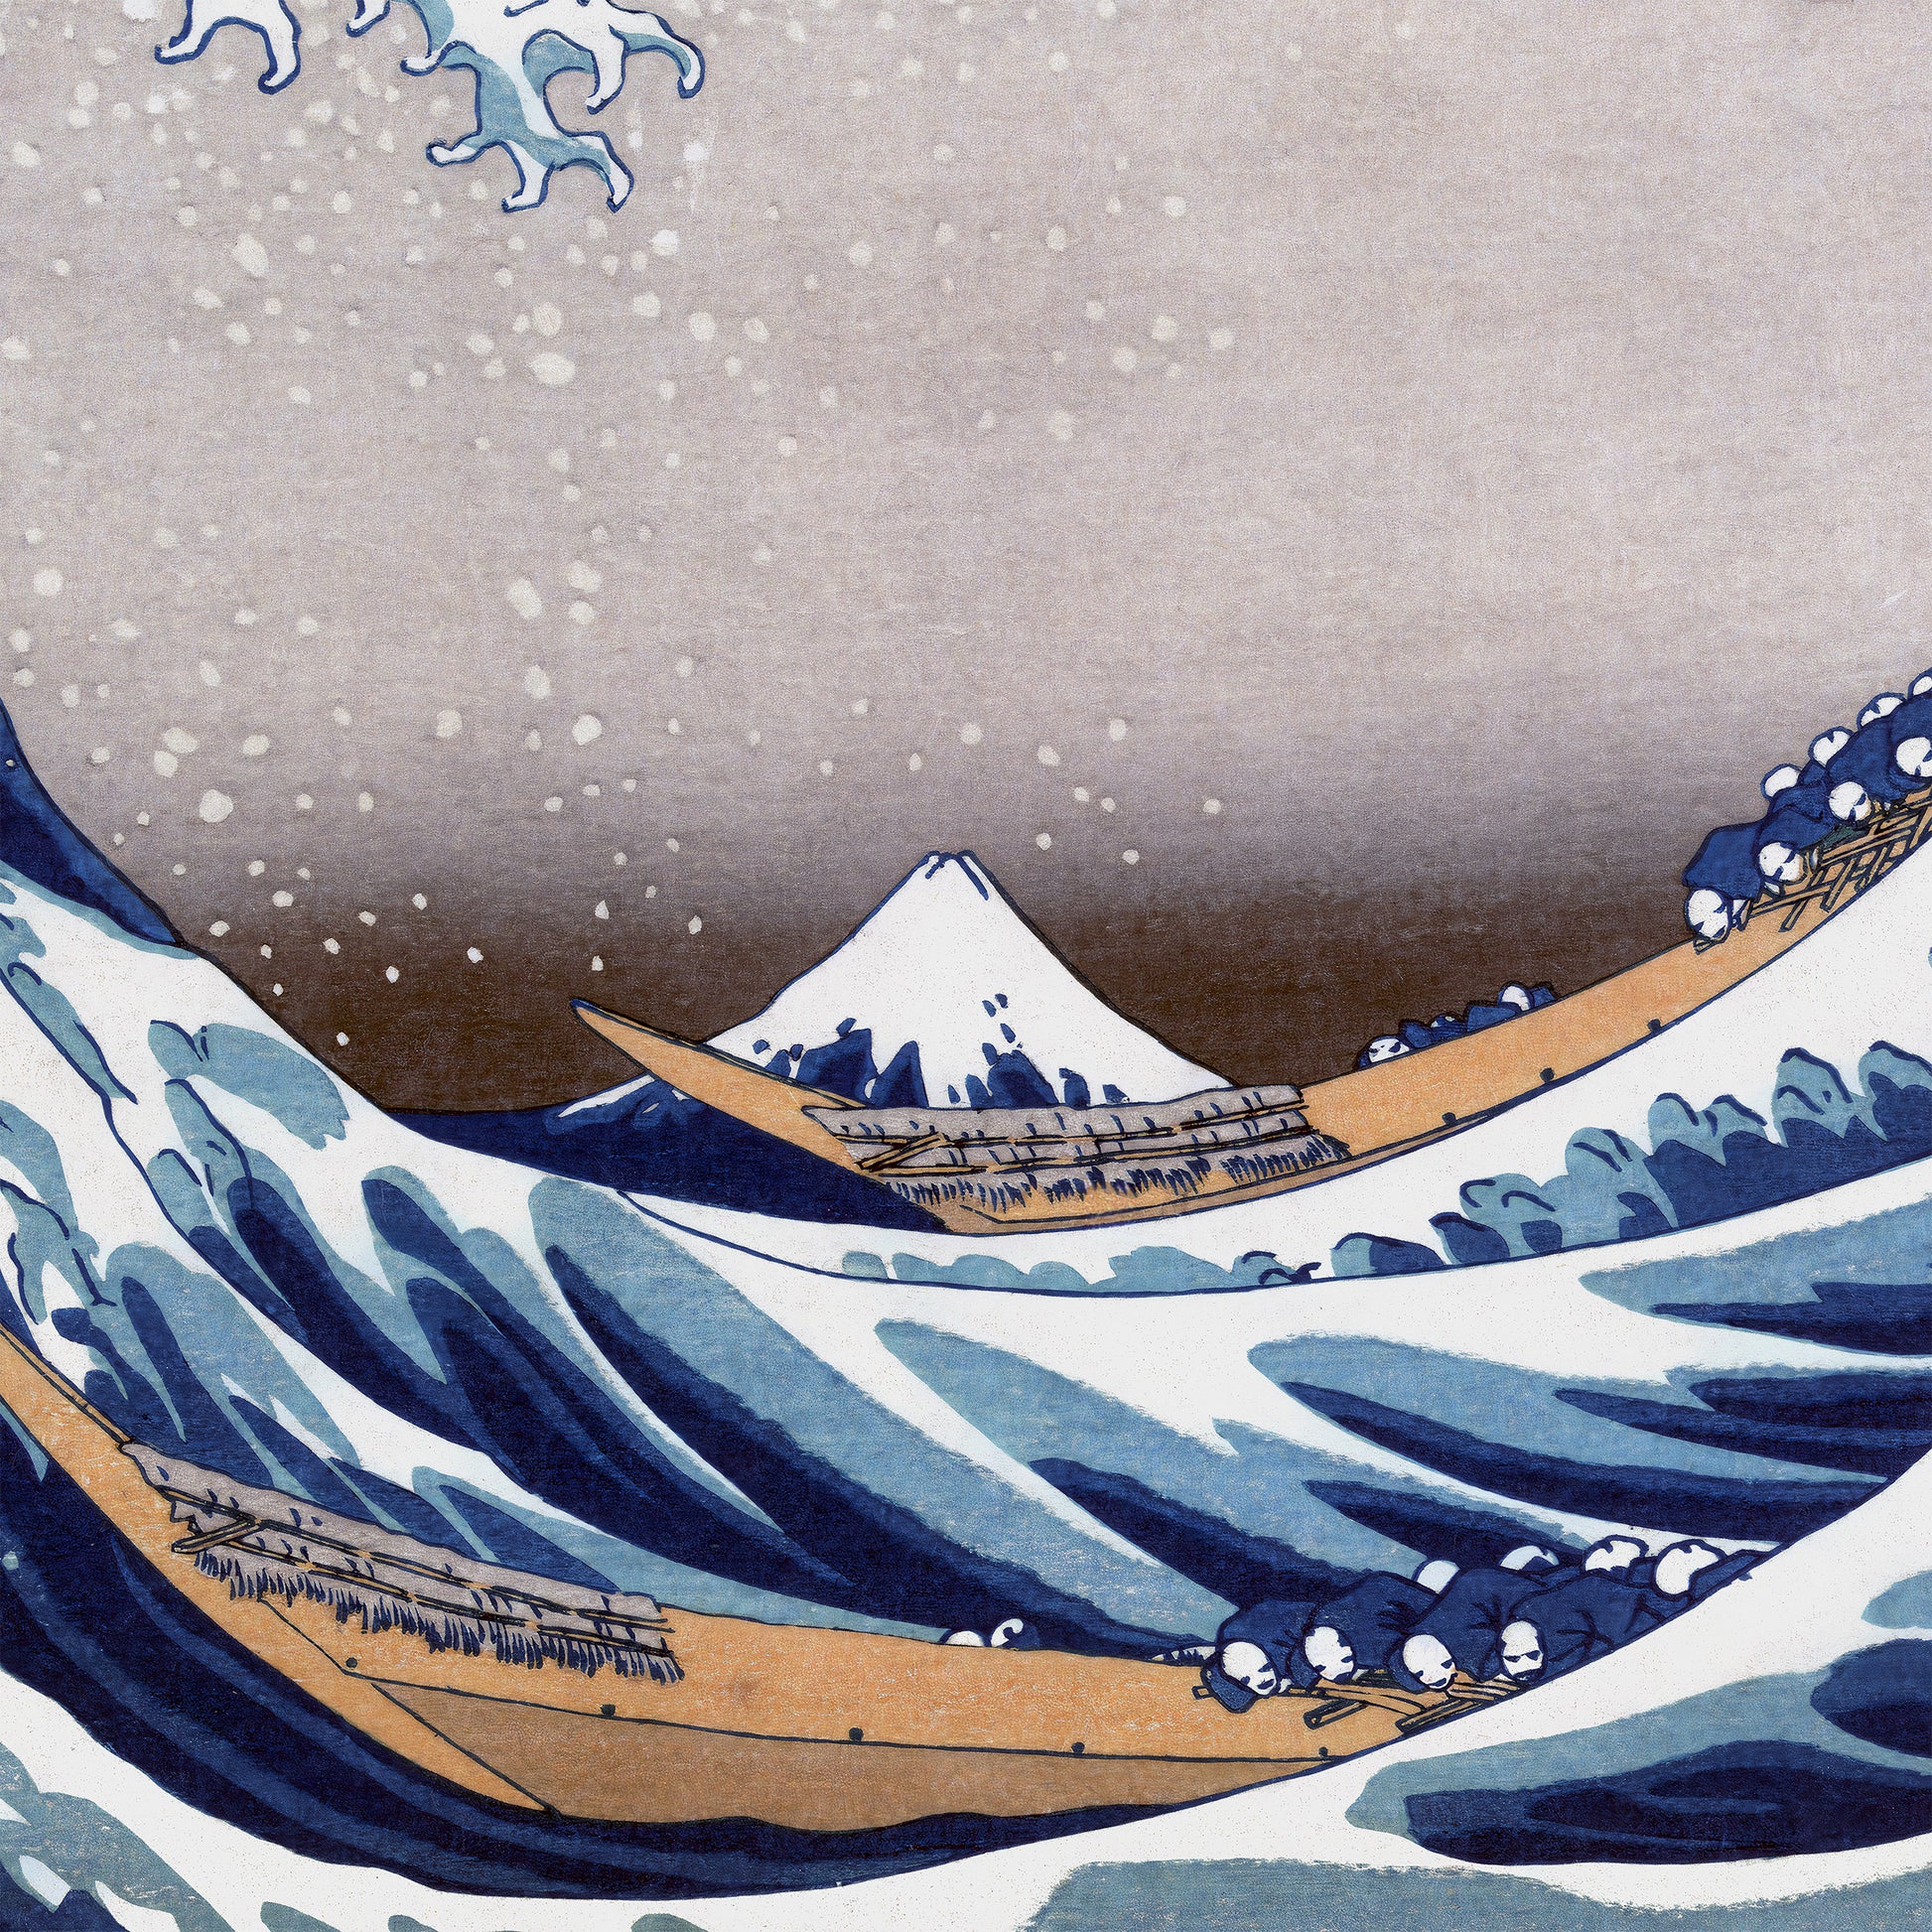 The Great Wave off Kanagawa - Hokusai – ToyoFineArt